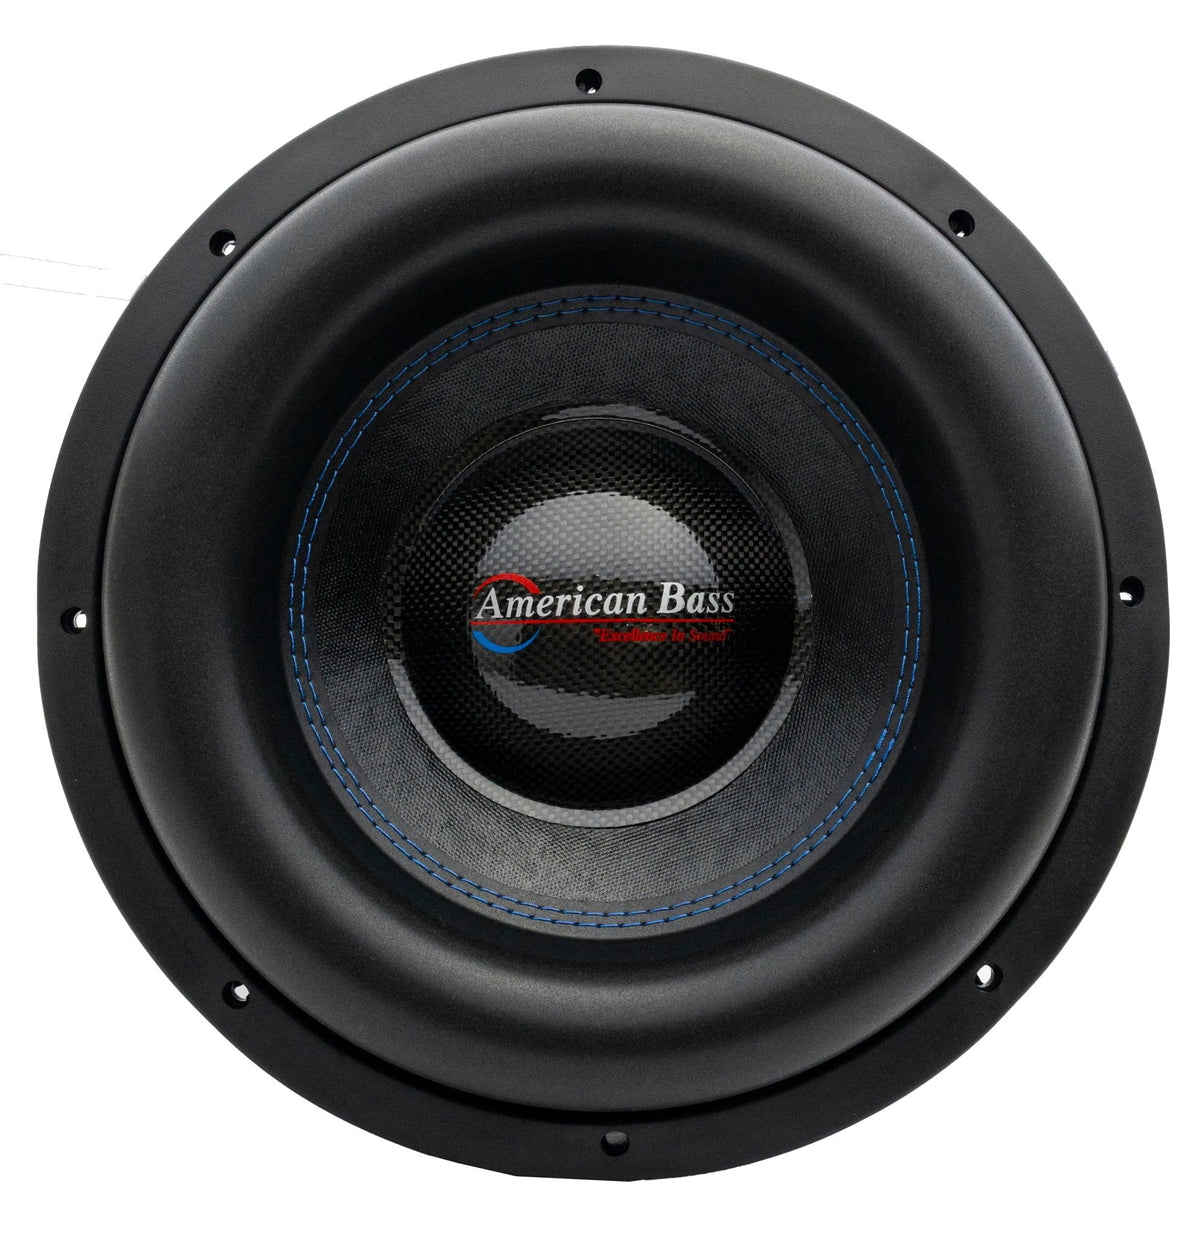 XMAXXX Monster 12" Subwoofer - American Bass Audio